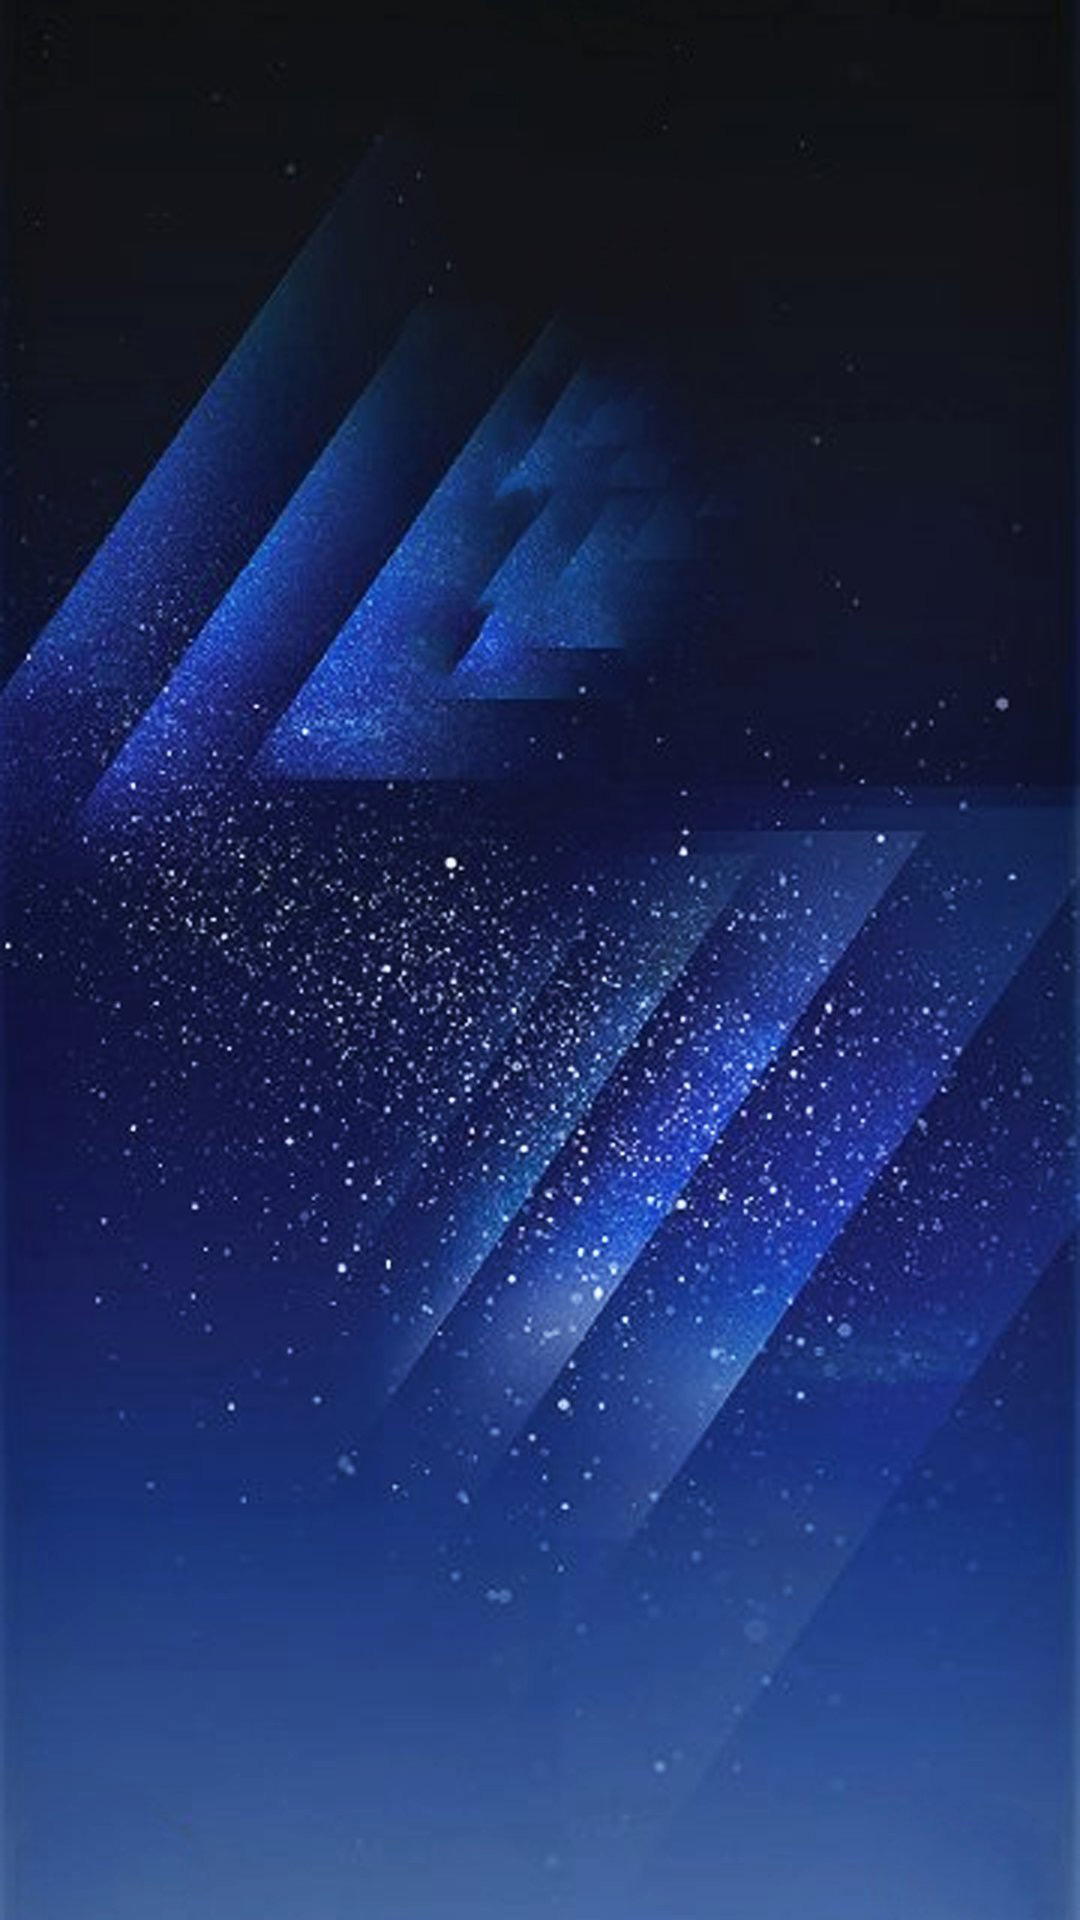 Samsung Galaxy S8 wallpapers en event-poster uitgelekt (download)